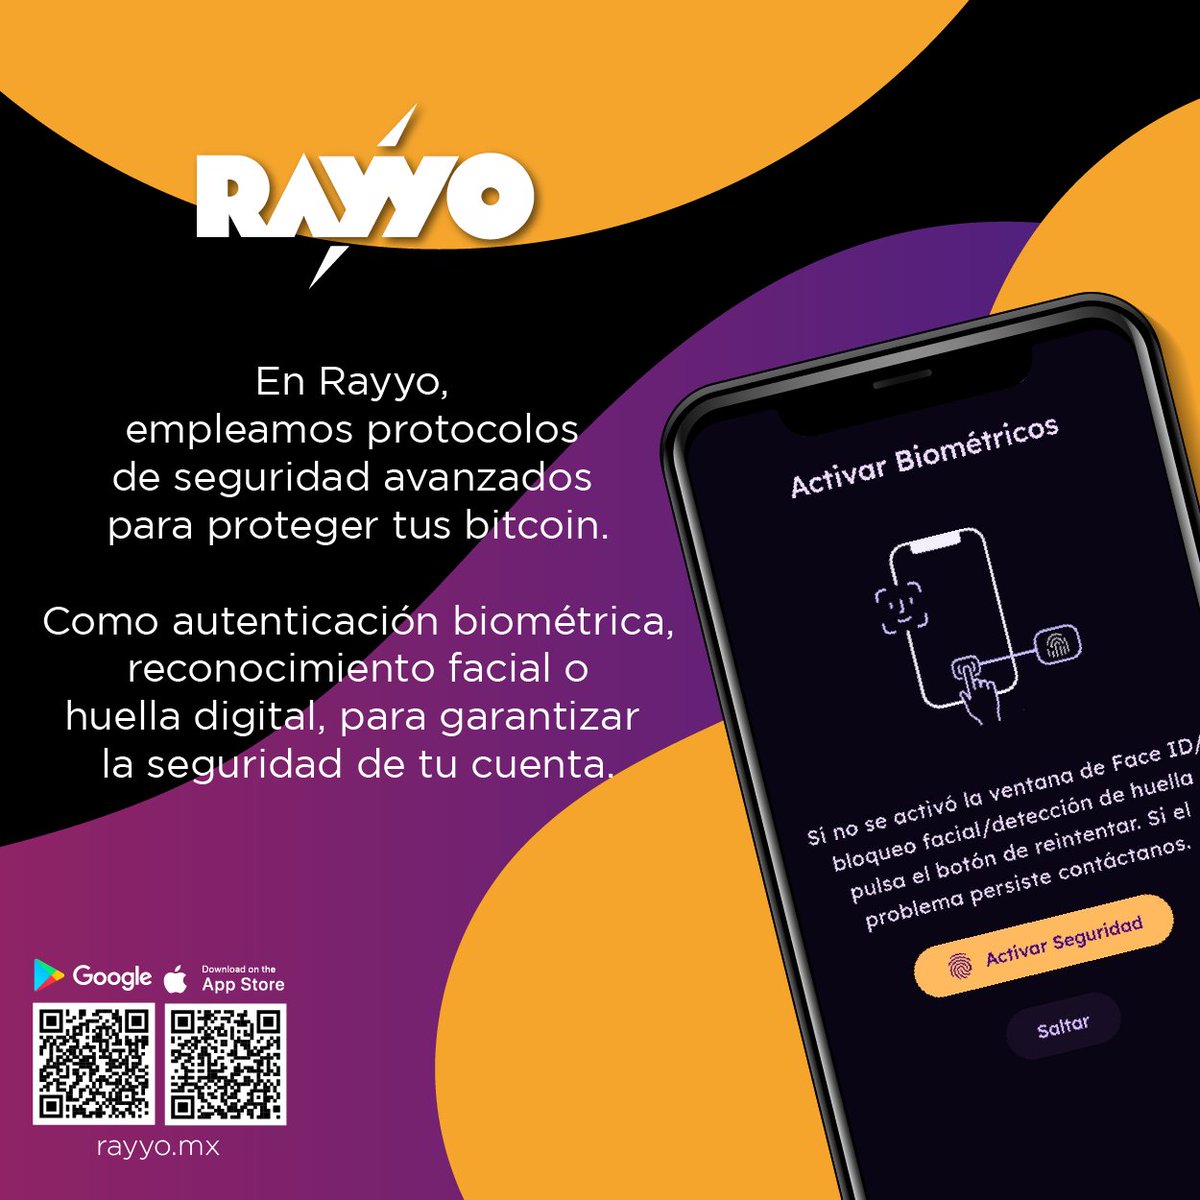 En #Rayyo #Wallet empleamos protocolos de seguridad avanzados para proteger los activos digitales de nuestros usuarios. Incluye autenticación biométrica, como reconocimiento facial o huella digital
.
.
#rayyoapp #androidapp #iosapp #bitcoin #btc